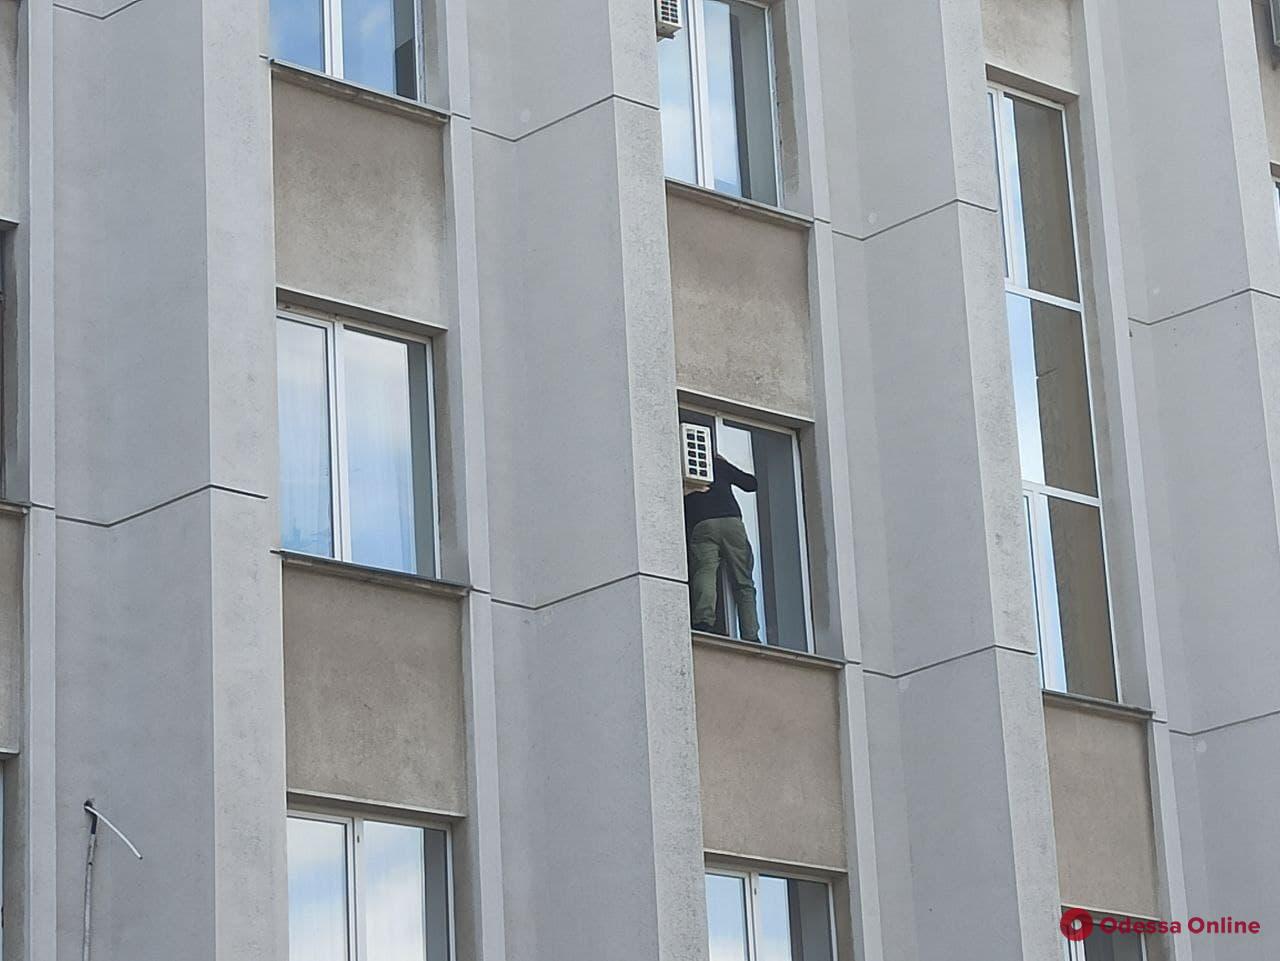 Переселенец грозится выпрыгнуть из окна ОГА на проспекте Шевченко (обновлено)